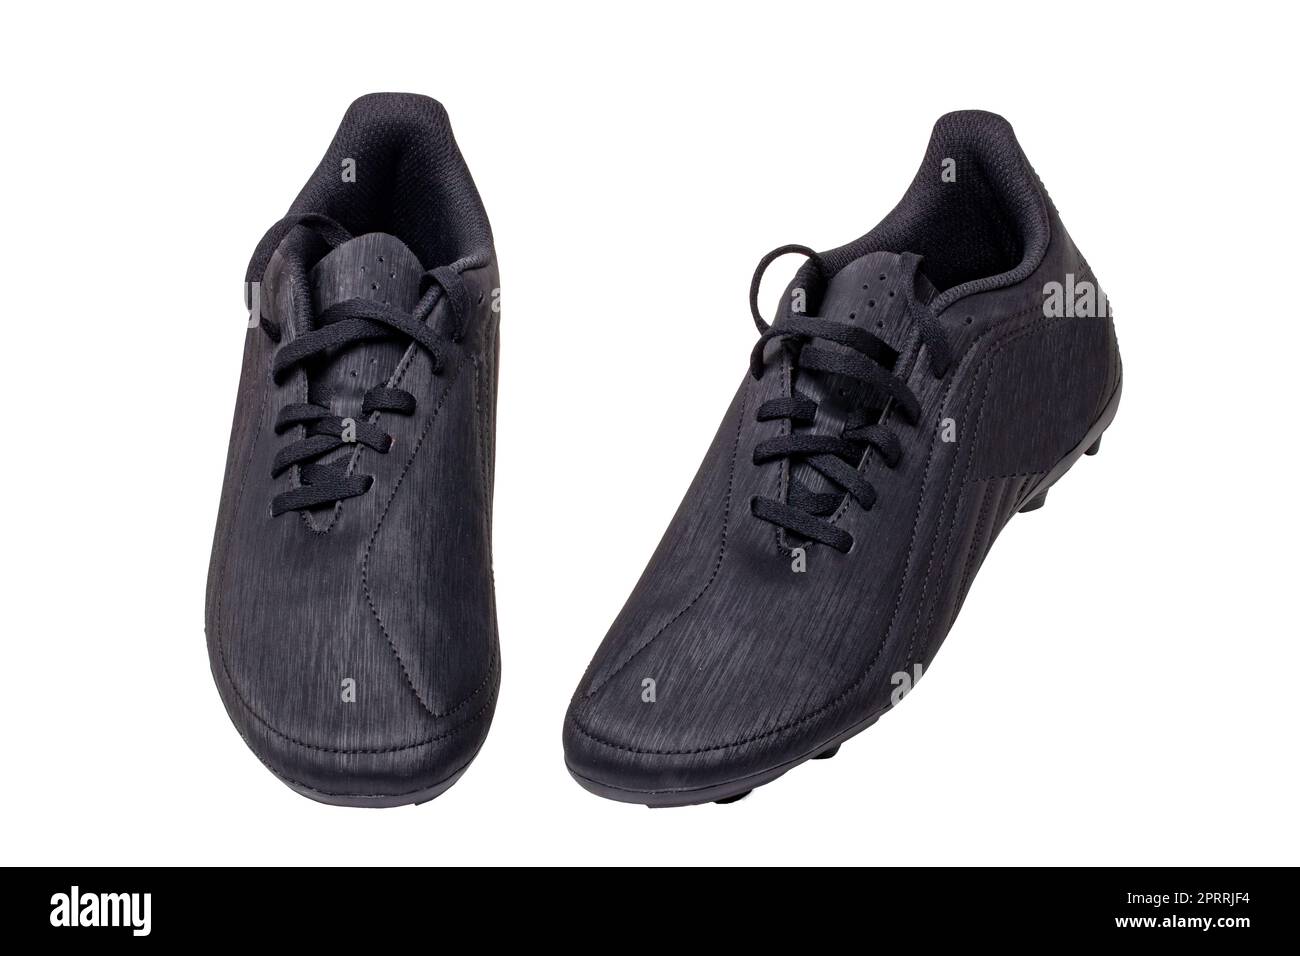 Primo piano di un paio di scarpe da calcio in pelle nera isolate su sfondo bianco. Scarpe da ginnastica professionali per ragazzi. Scarpe sportive. Foto Stock